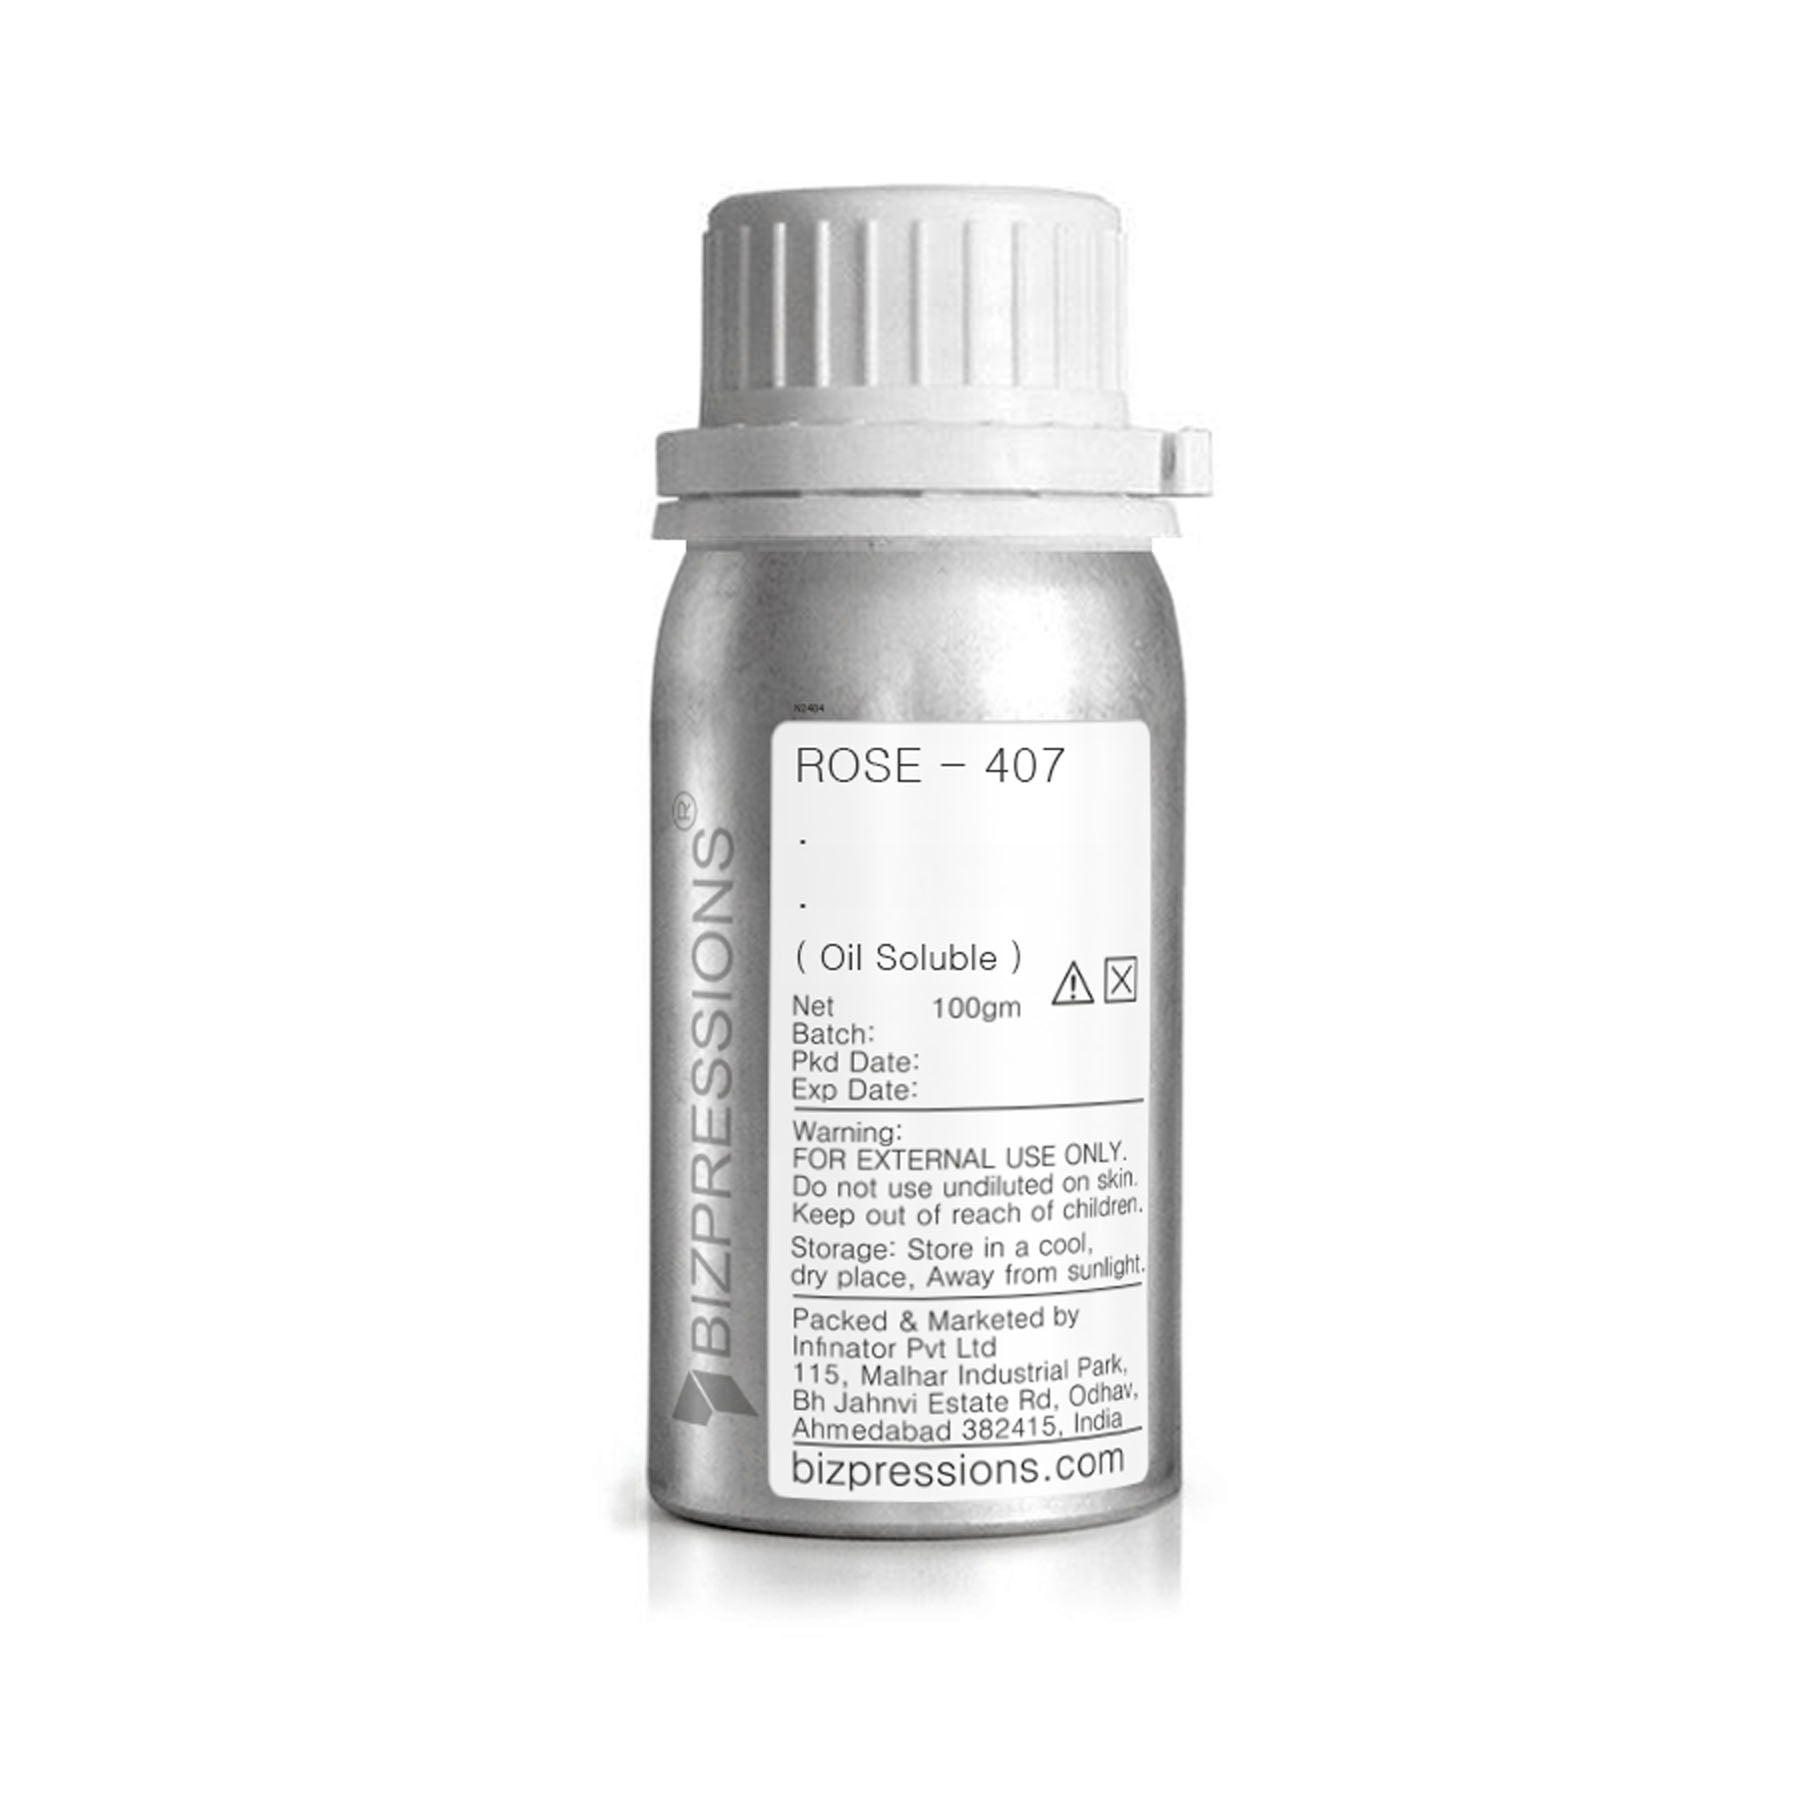 ROSE - 407 - Fragrance ( Oil Soluble ) - 100 gm